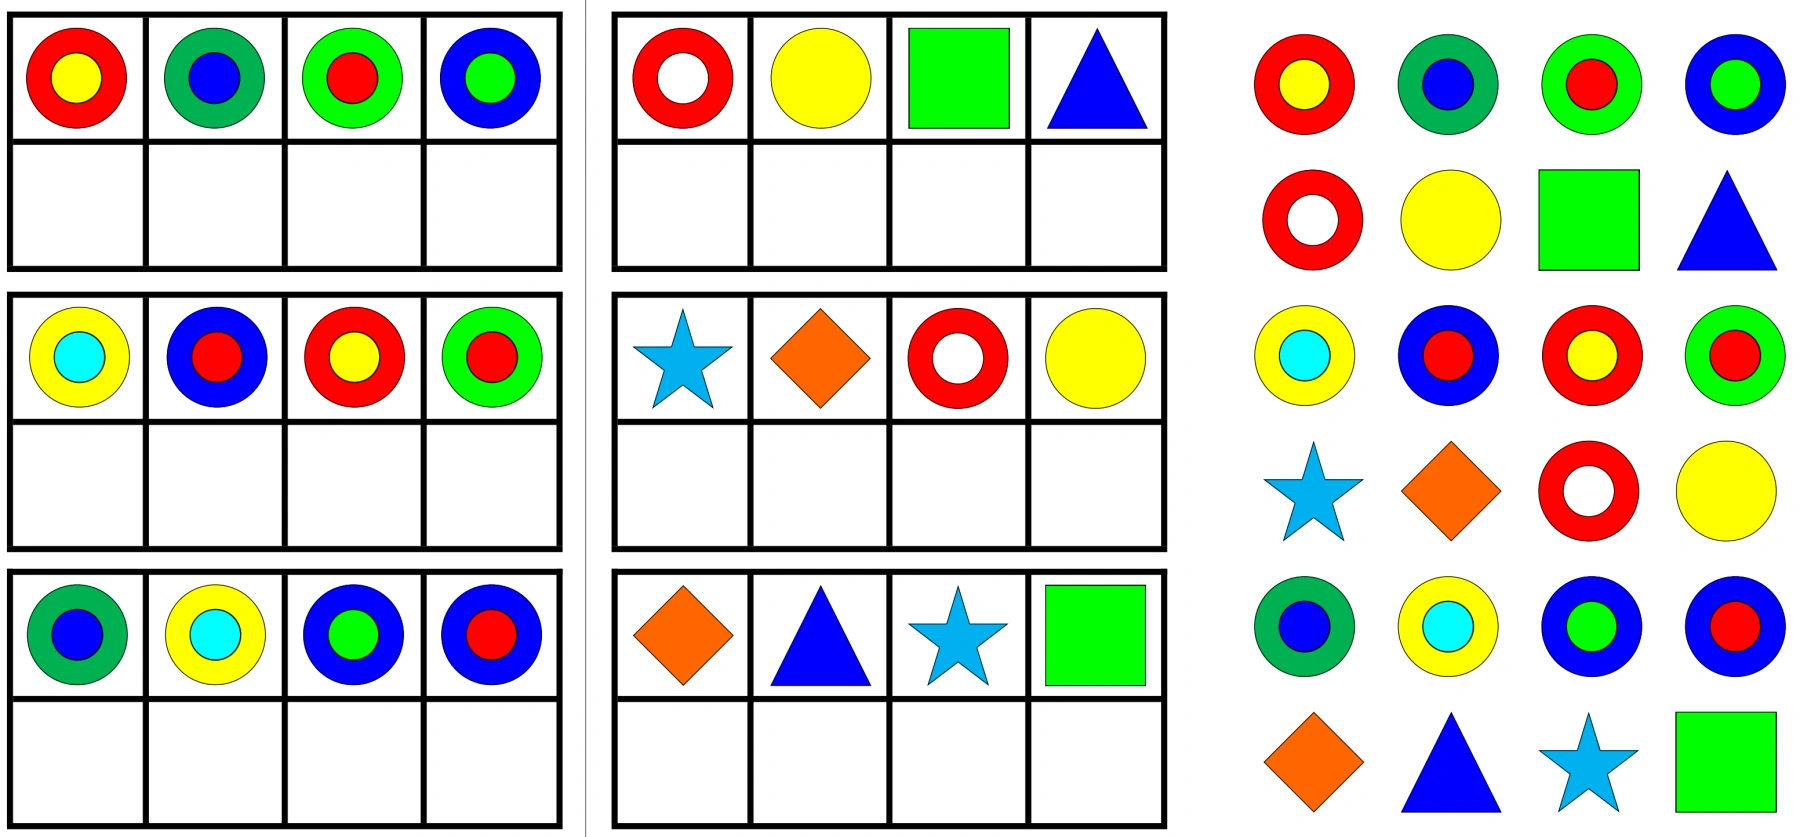 klettaufgaben 1zu1 zuordnung farbe form • Aufgabenmappe 1zu1 Zuordnung Farben und Formen